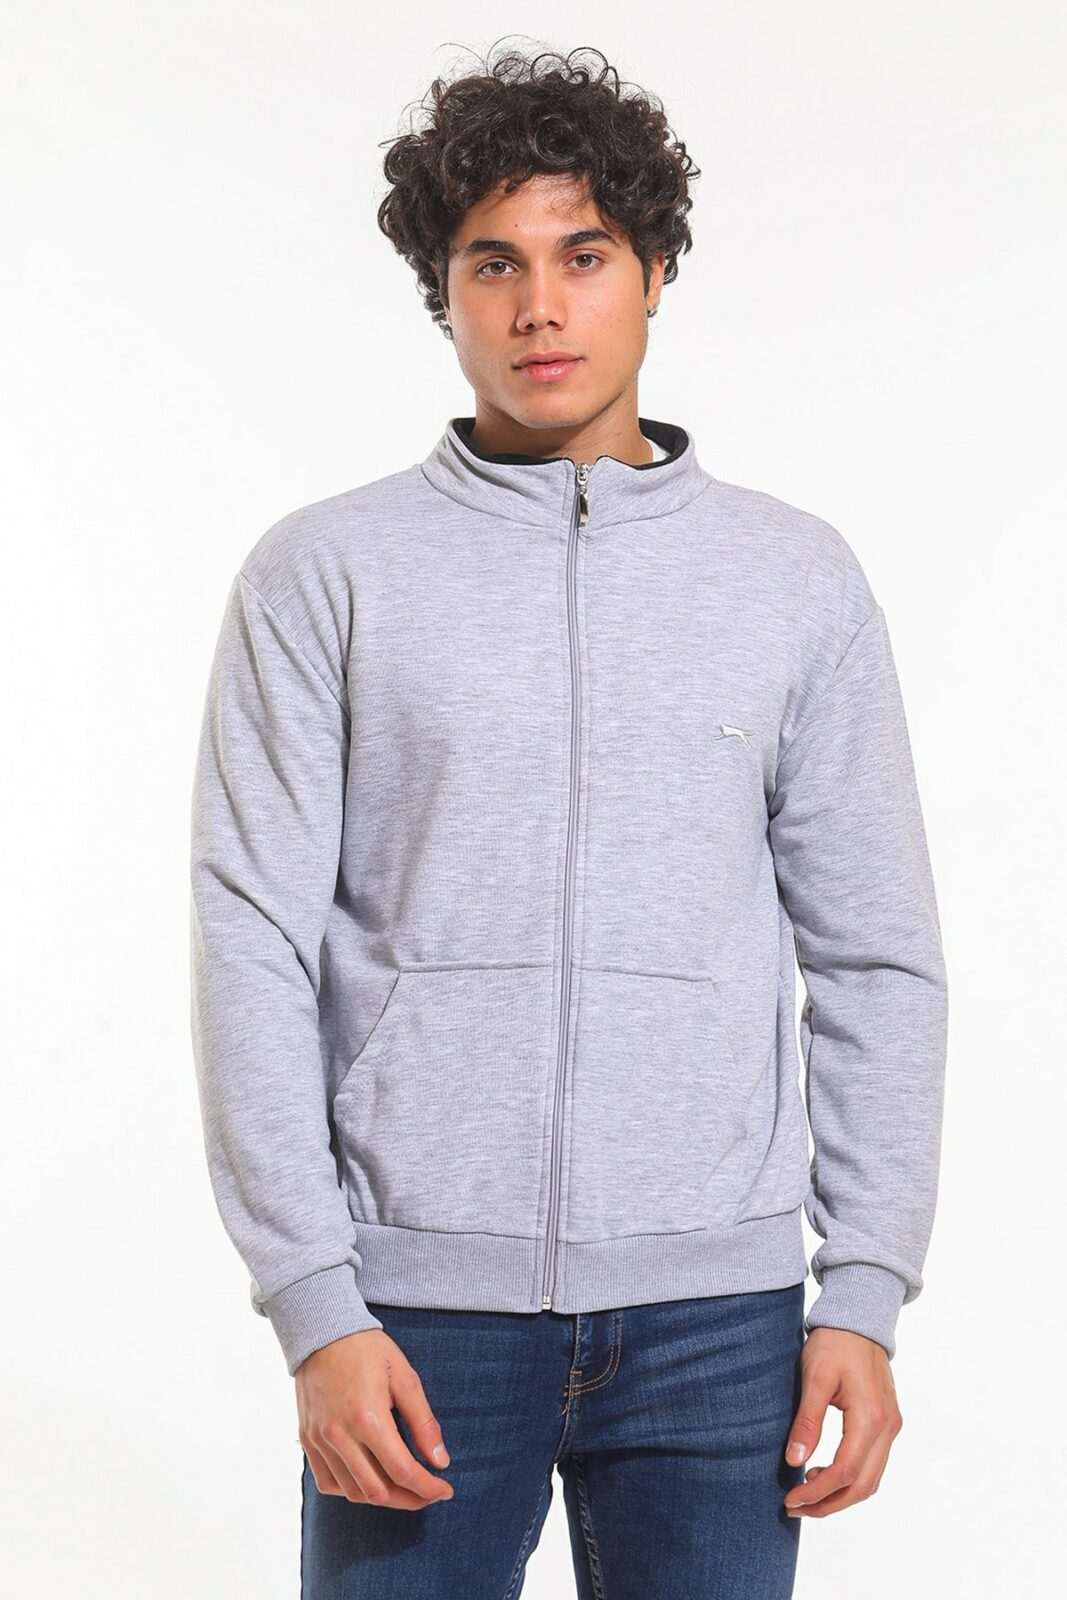 Slazenger Sports Sweatshirt - Gray